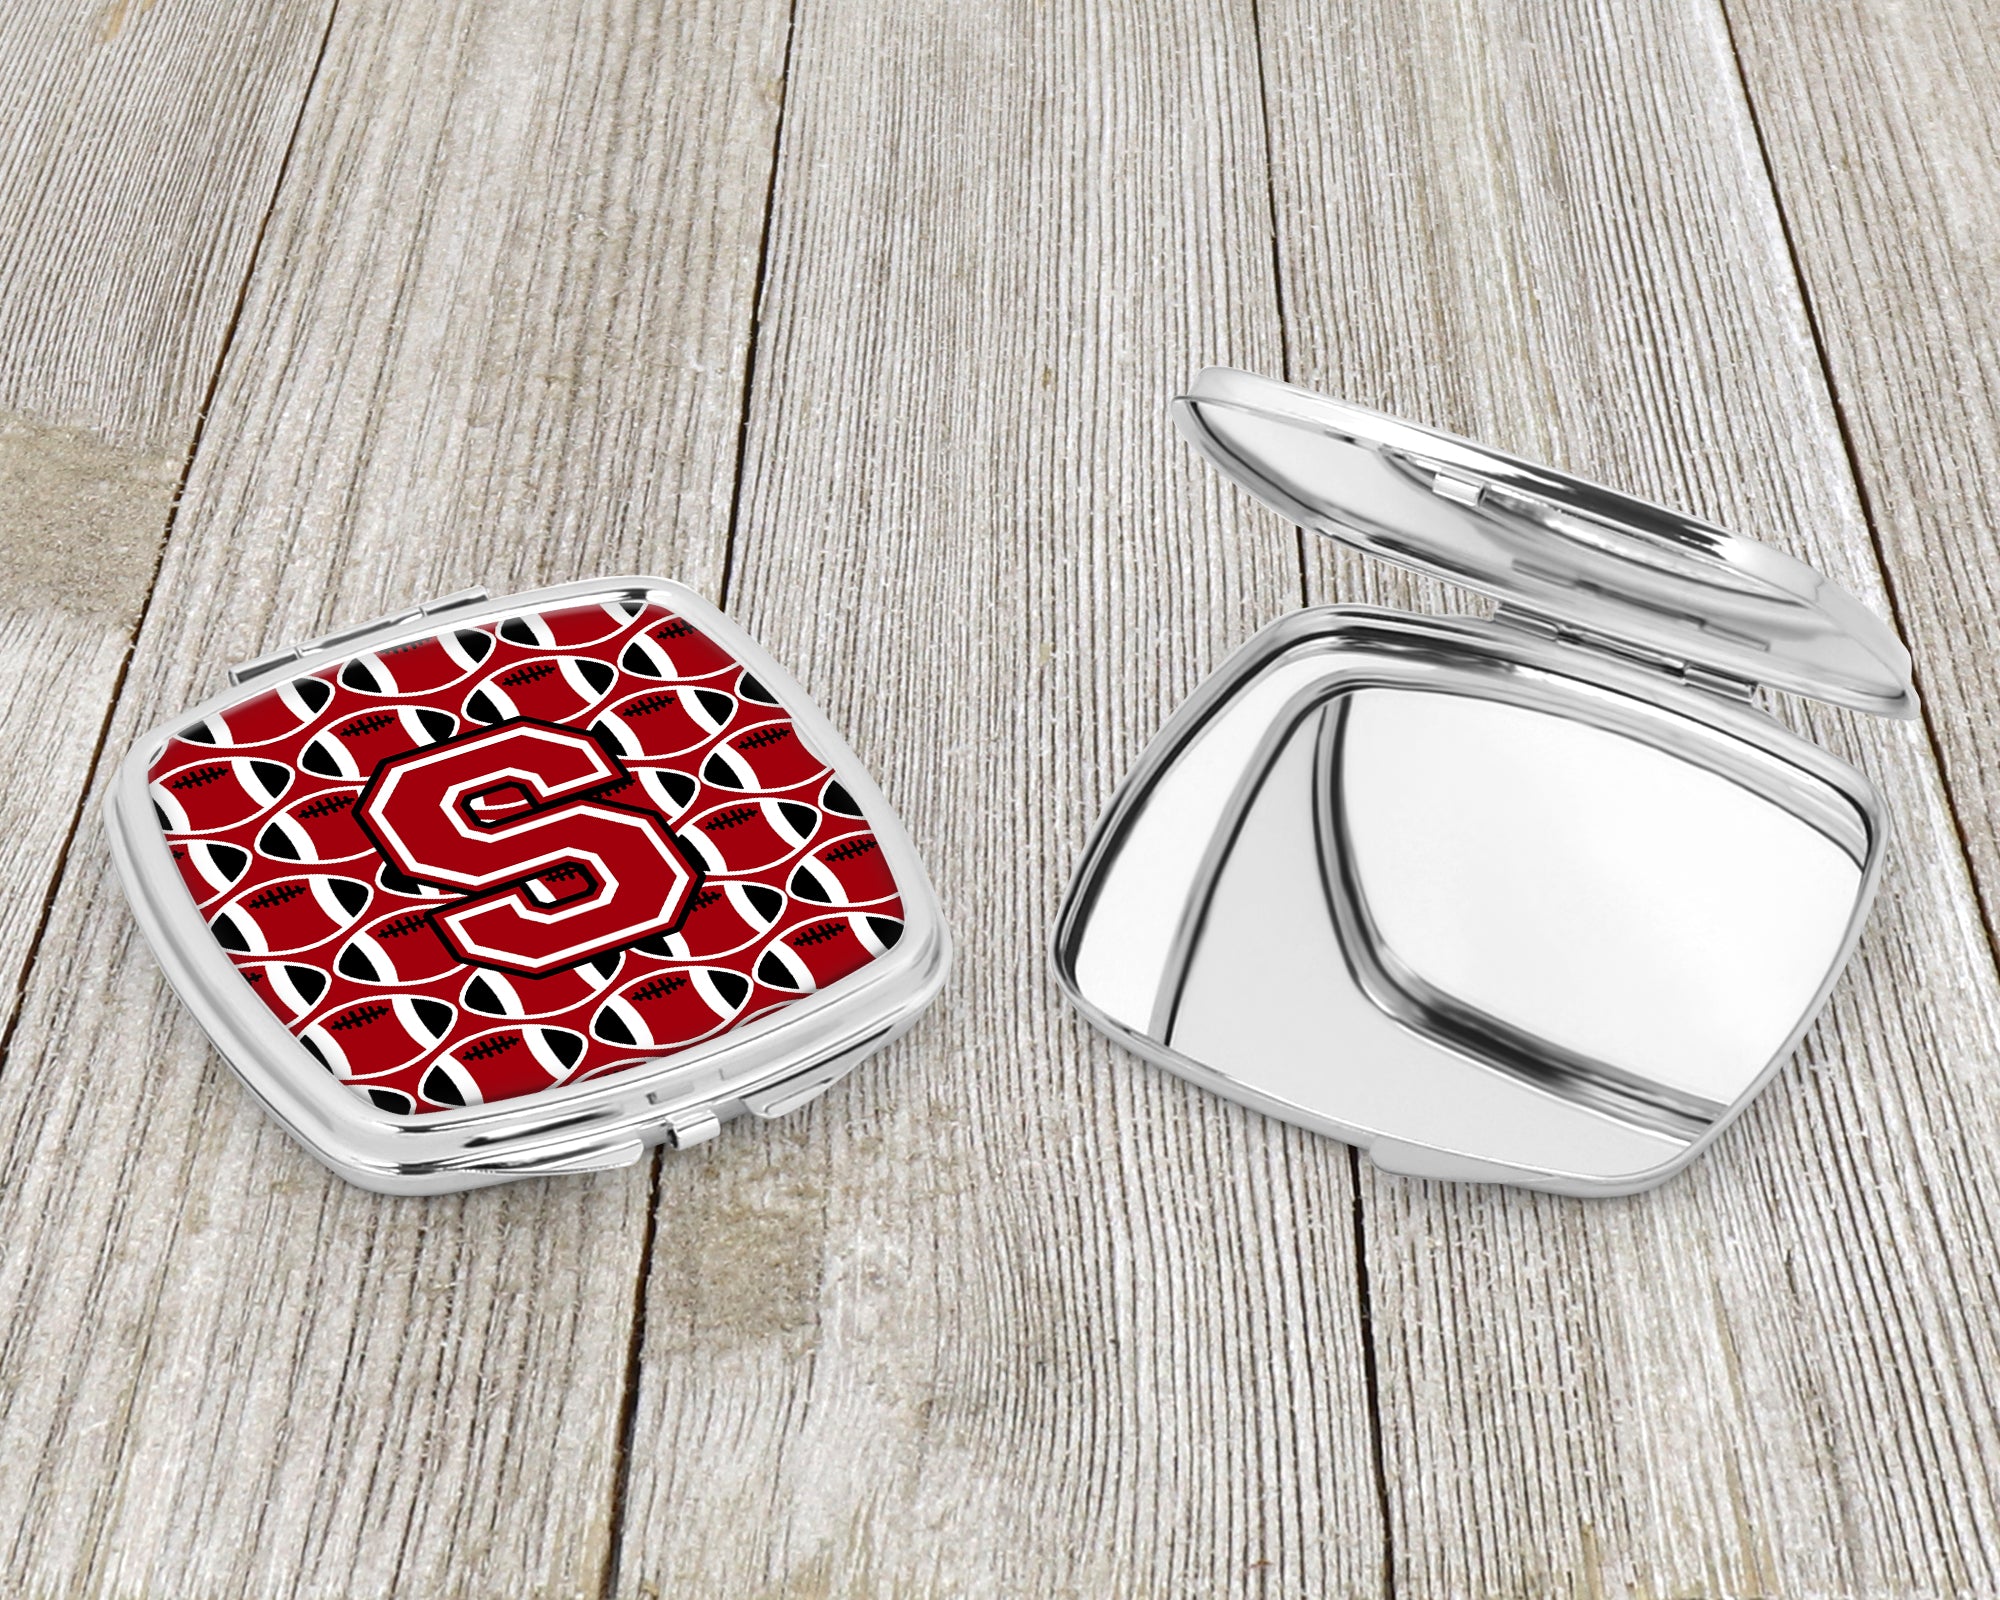 Miroir compact lettre S football rouge, noir et blanc CJ1073-SSCM